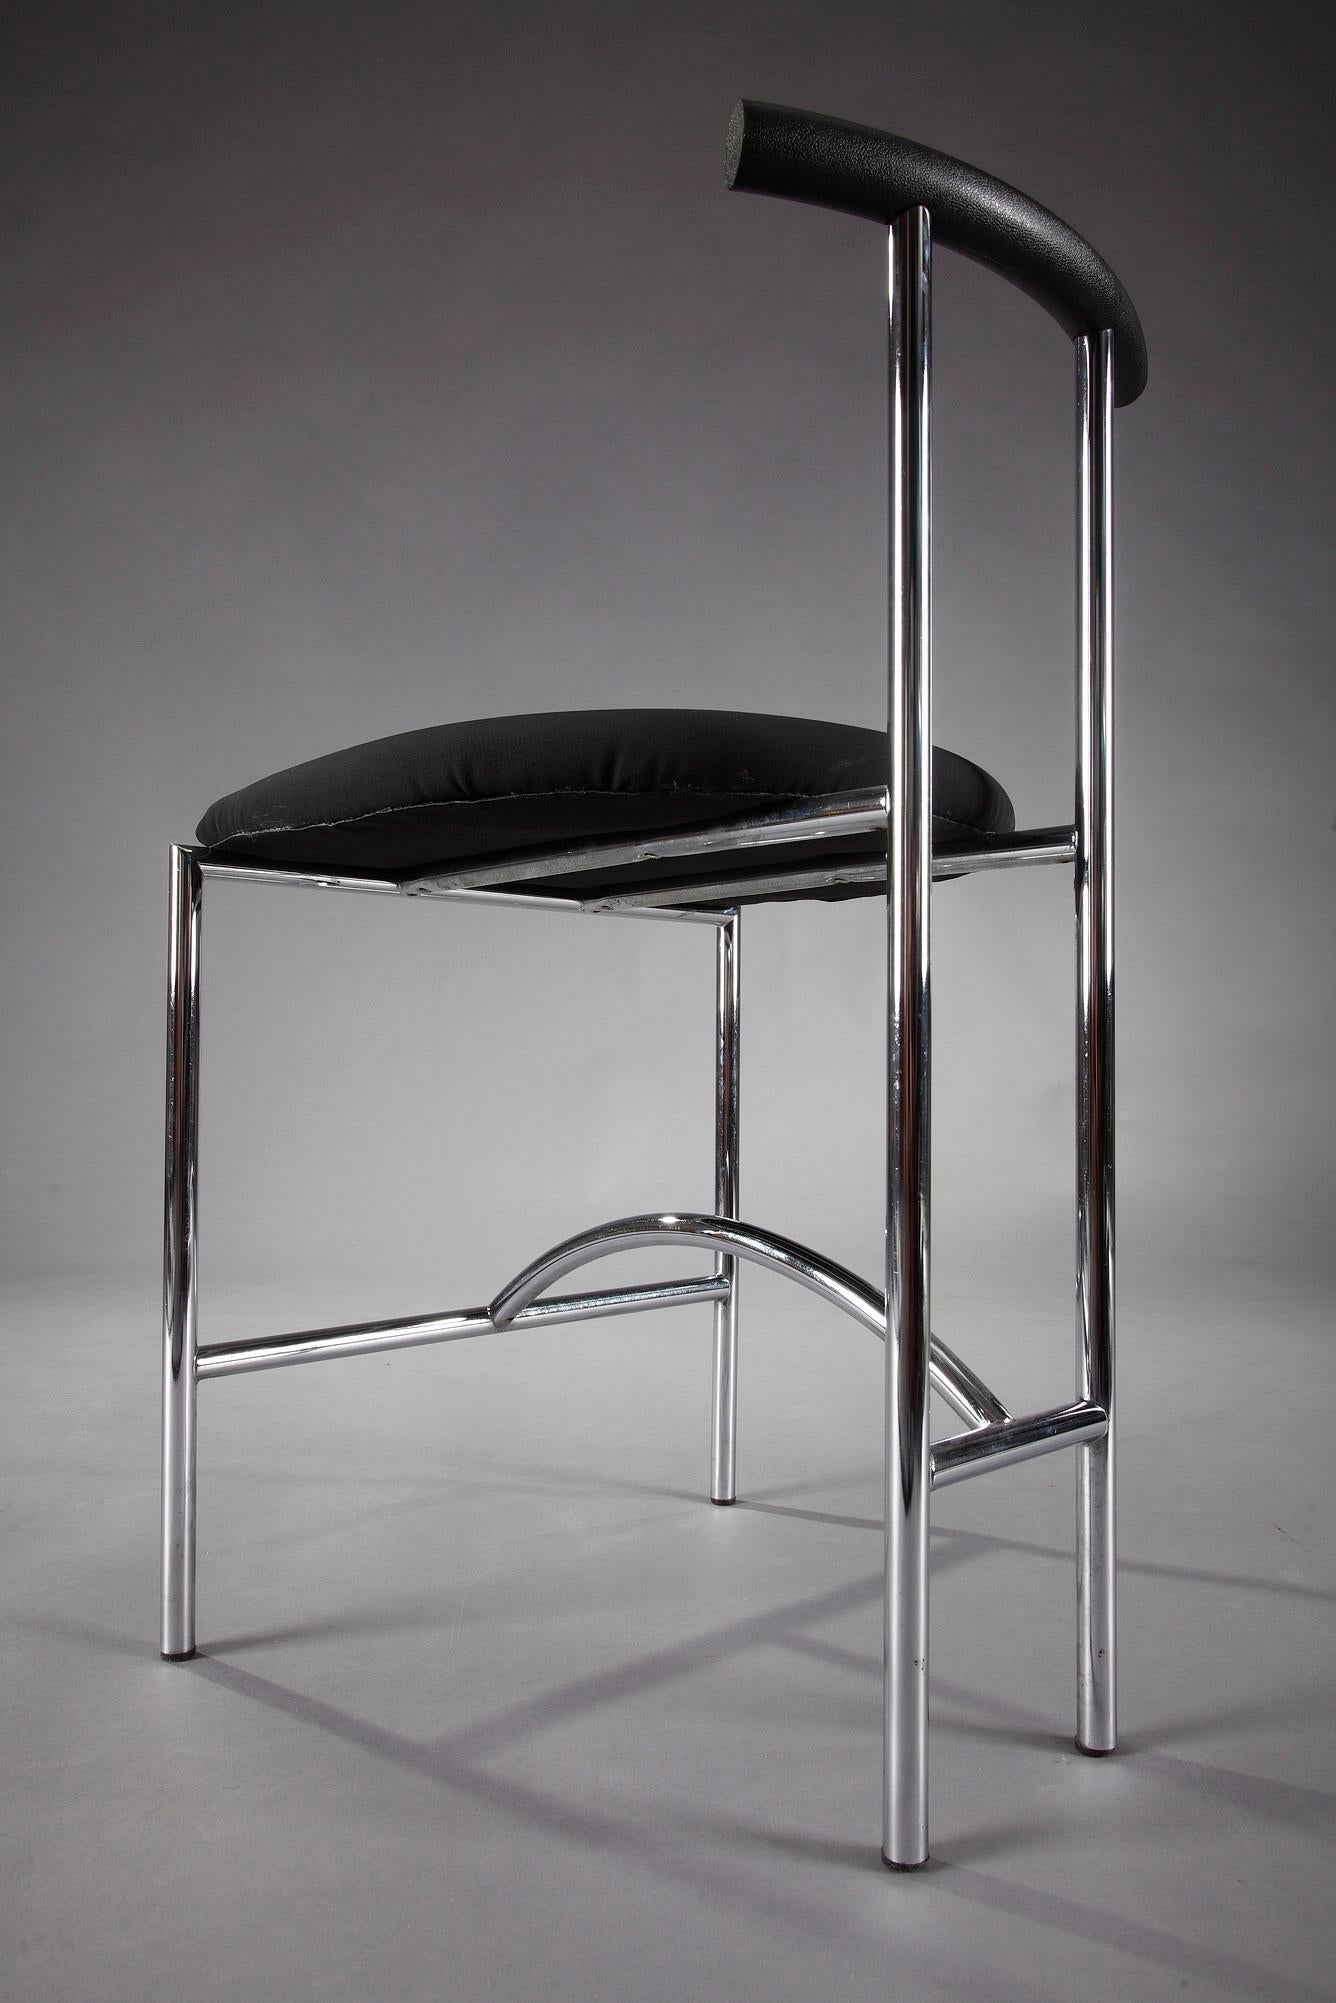 3 Bieffeplast Tokyo Chairs by Rodney Kinsman 7